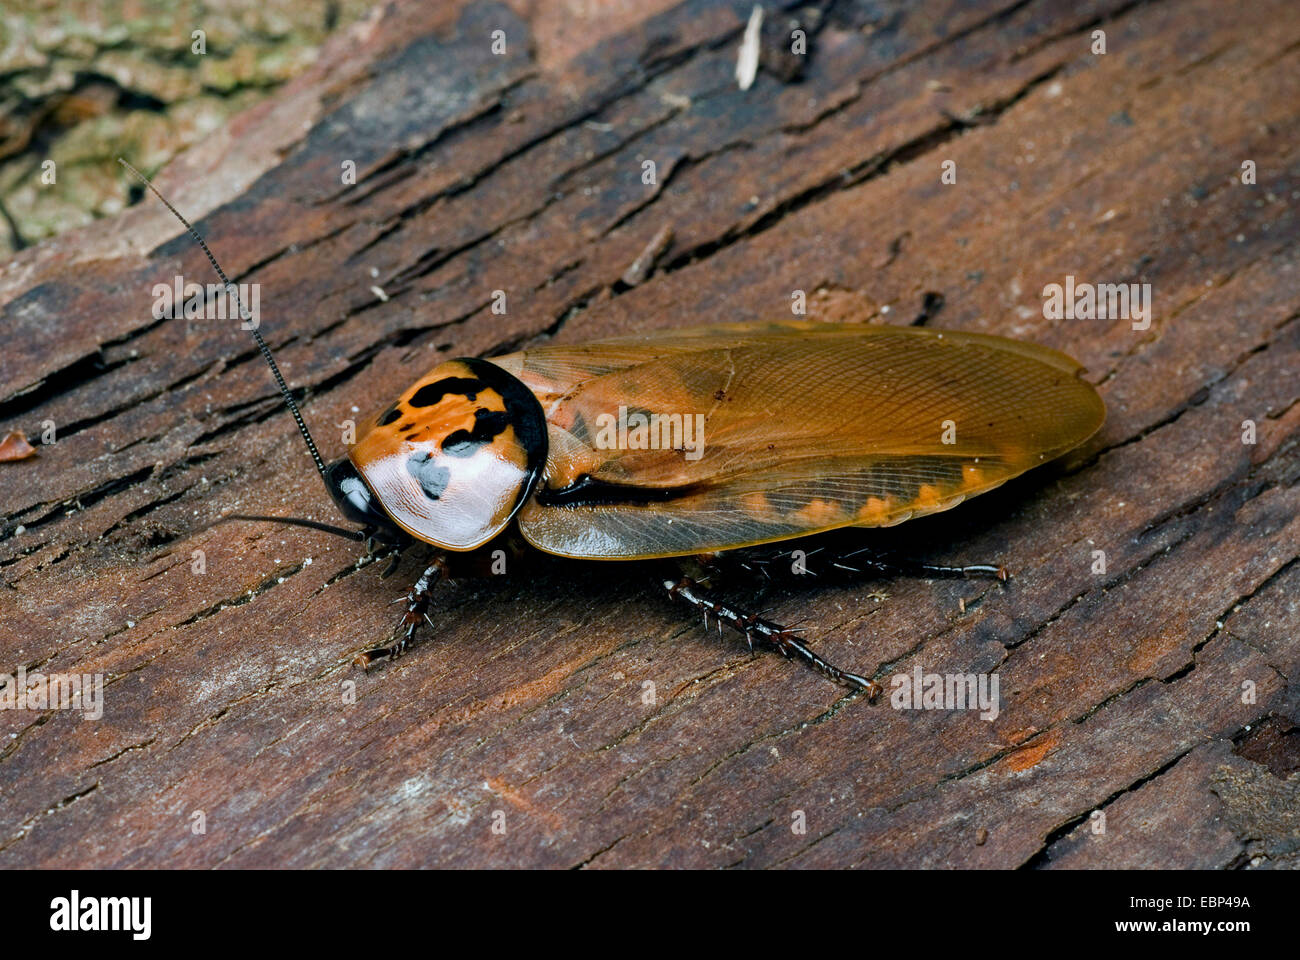 4 spots roach (Eublaberus distanti), sur l'écorce Banque D'Images